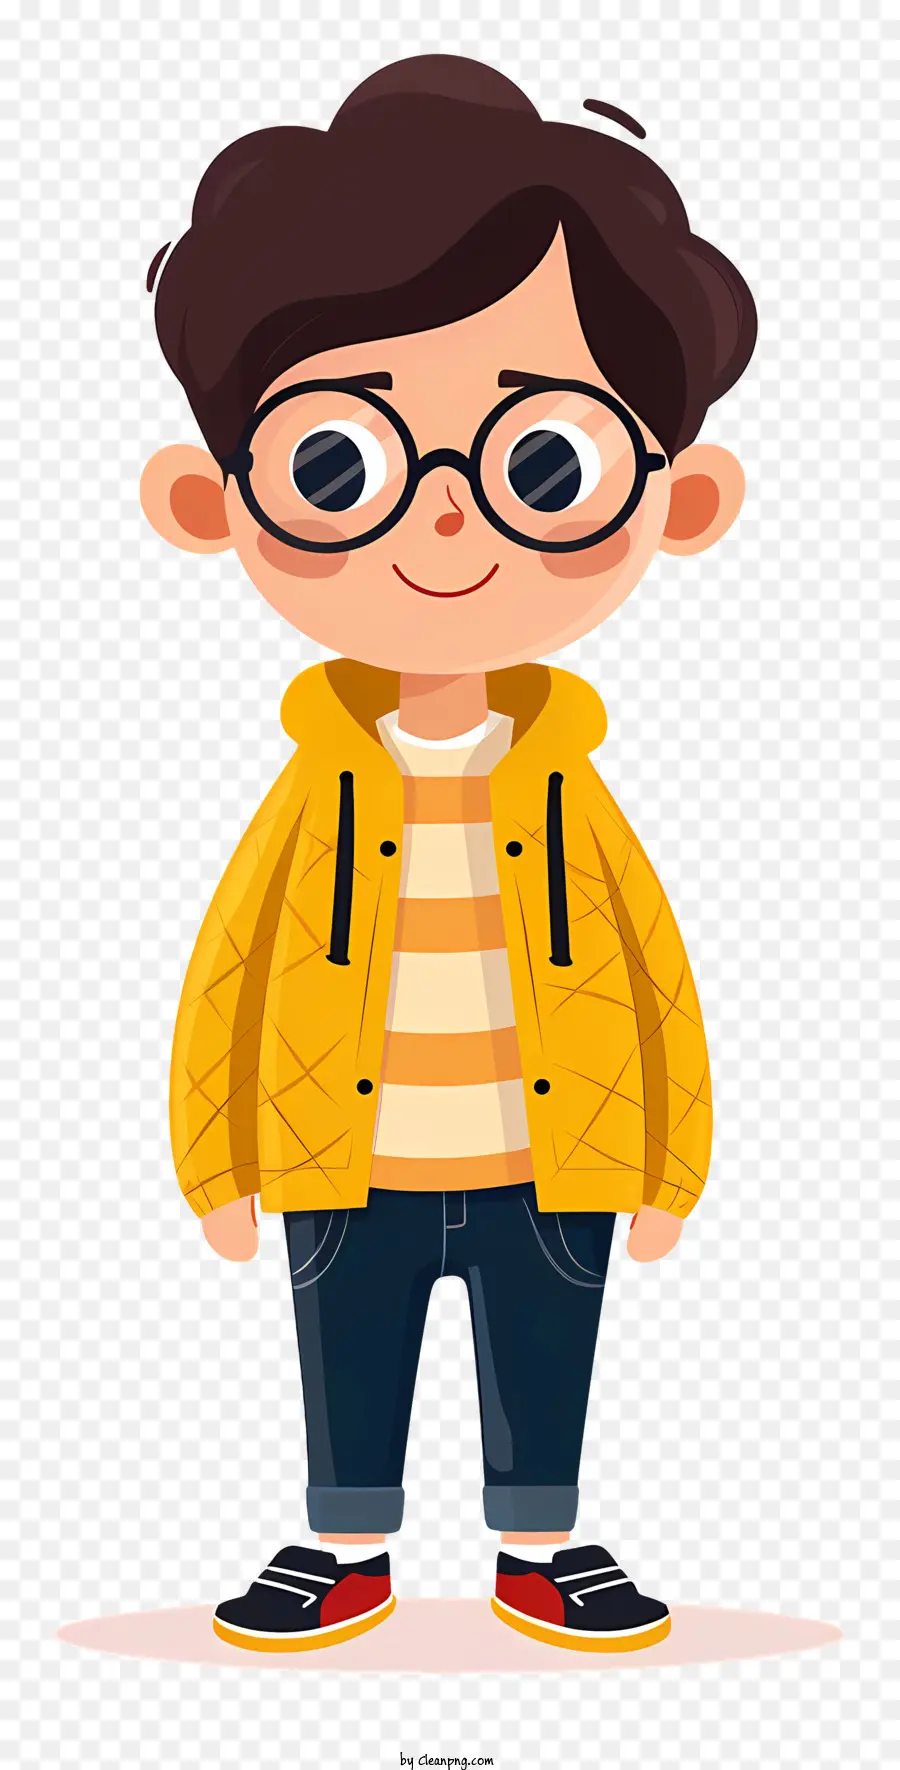 Brille - Person in gelber Jacke mit Brille, glücklich